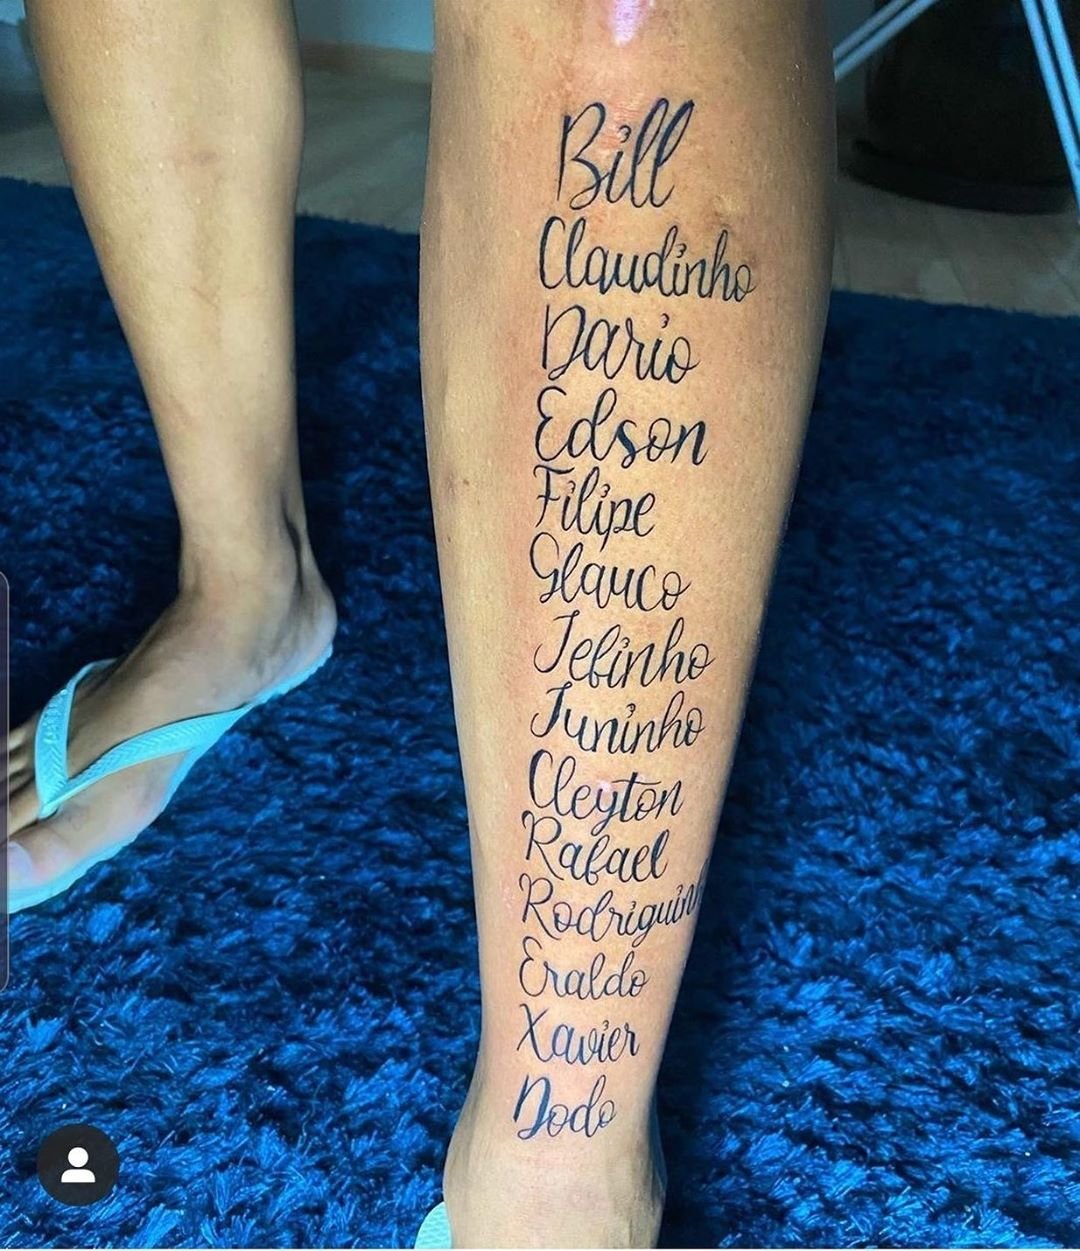 Quem explica? Deyverson  tatuou na perna o nome de 14 amigos.